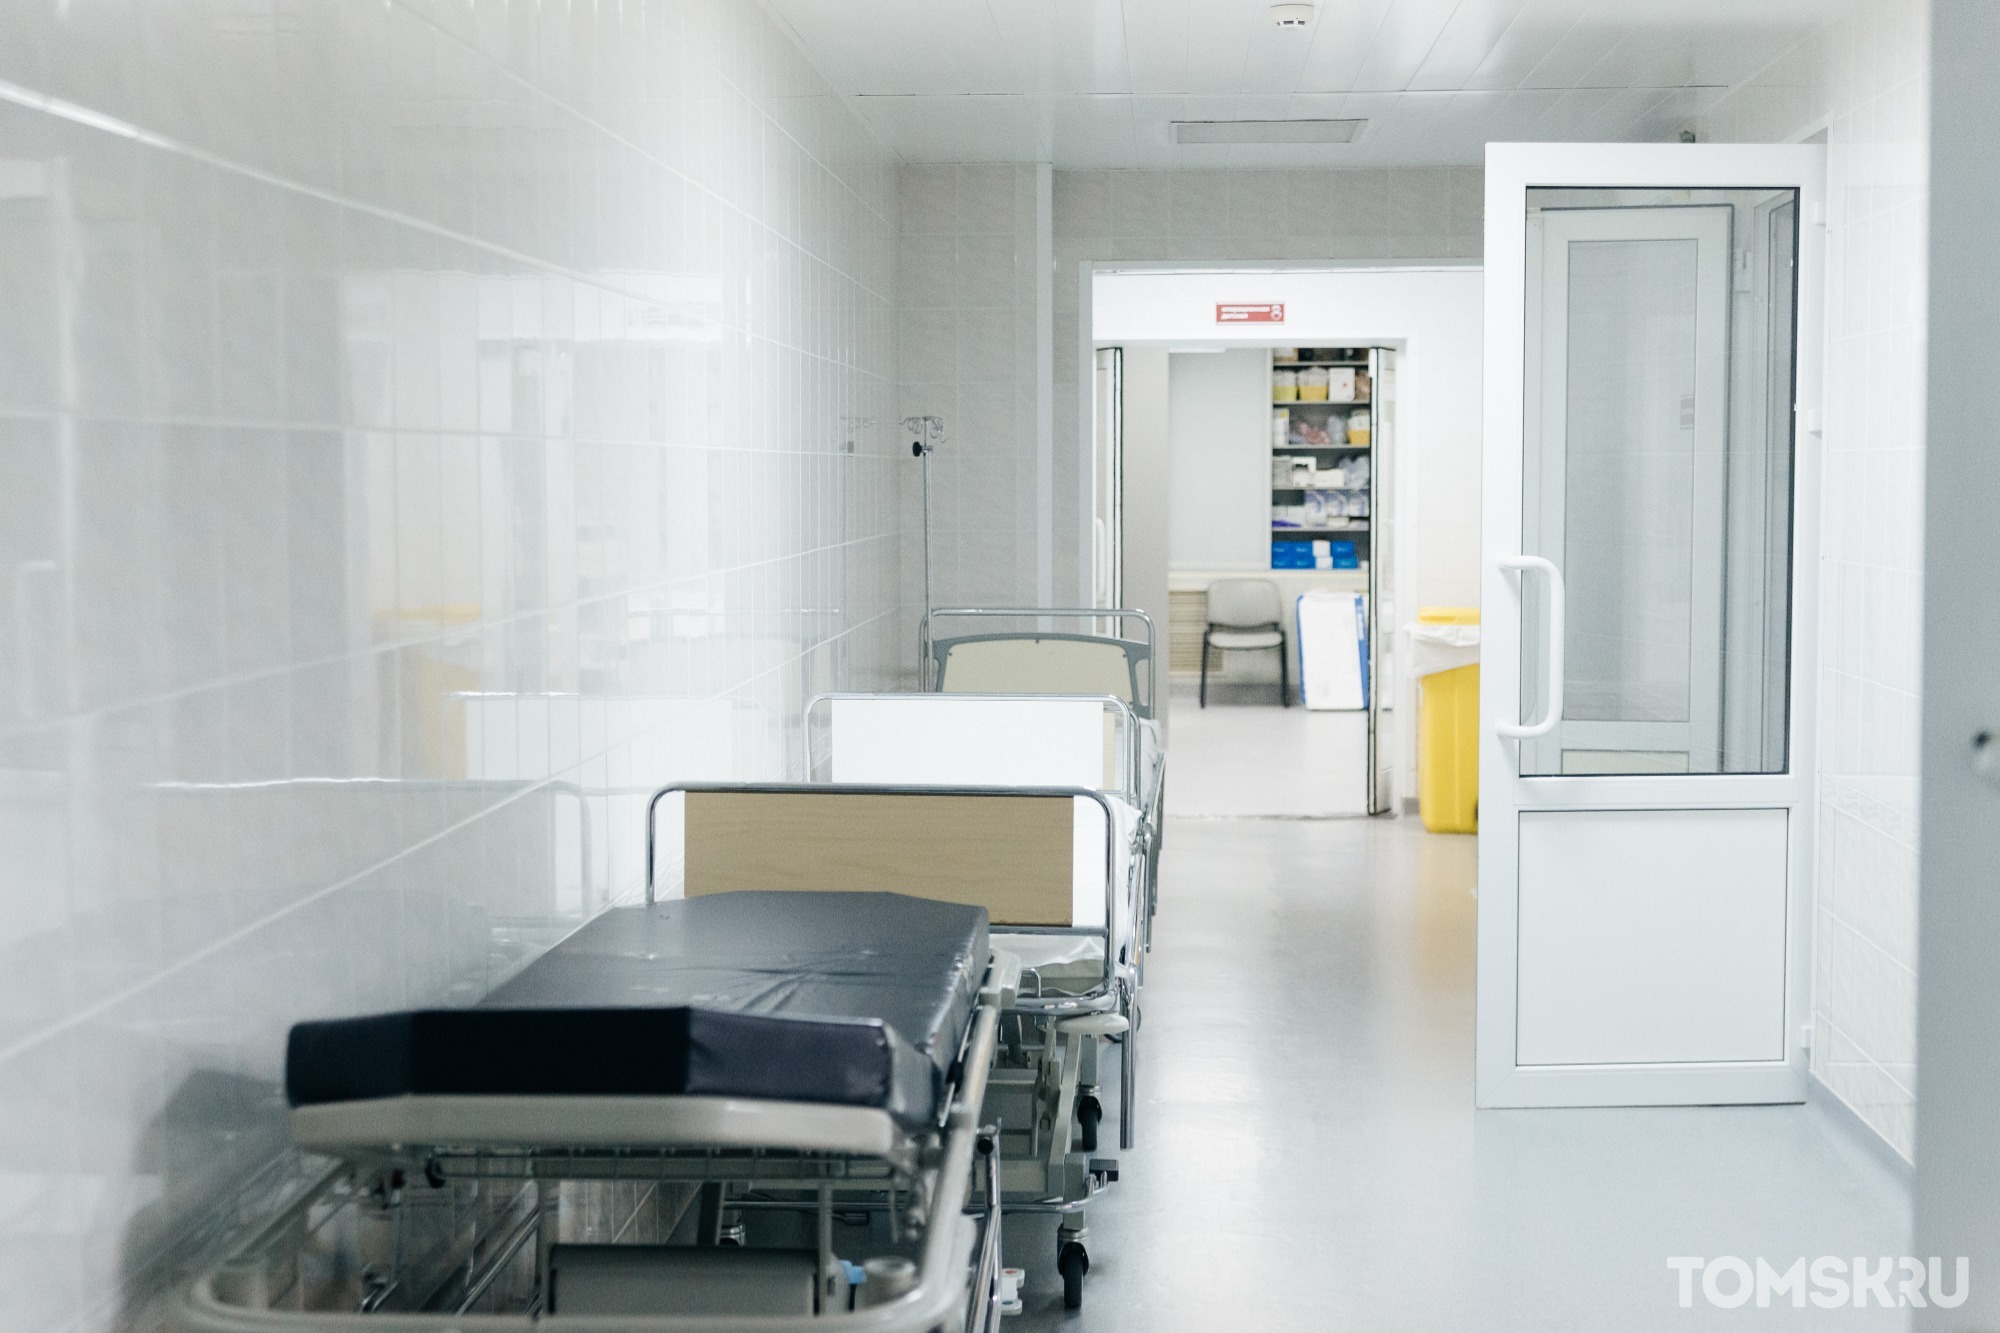 Томской области не требуется дополнительный коечный фонд в ковидных госпиталях